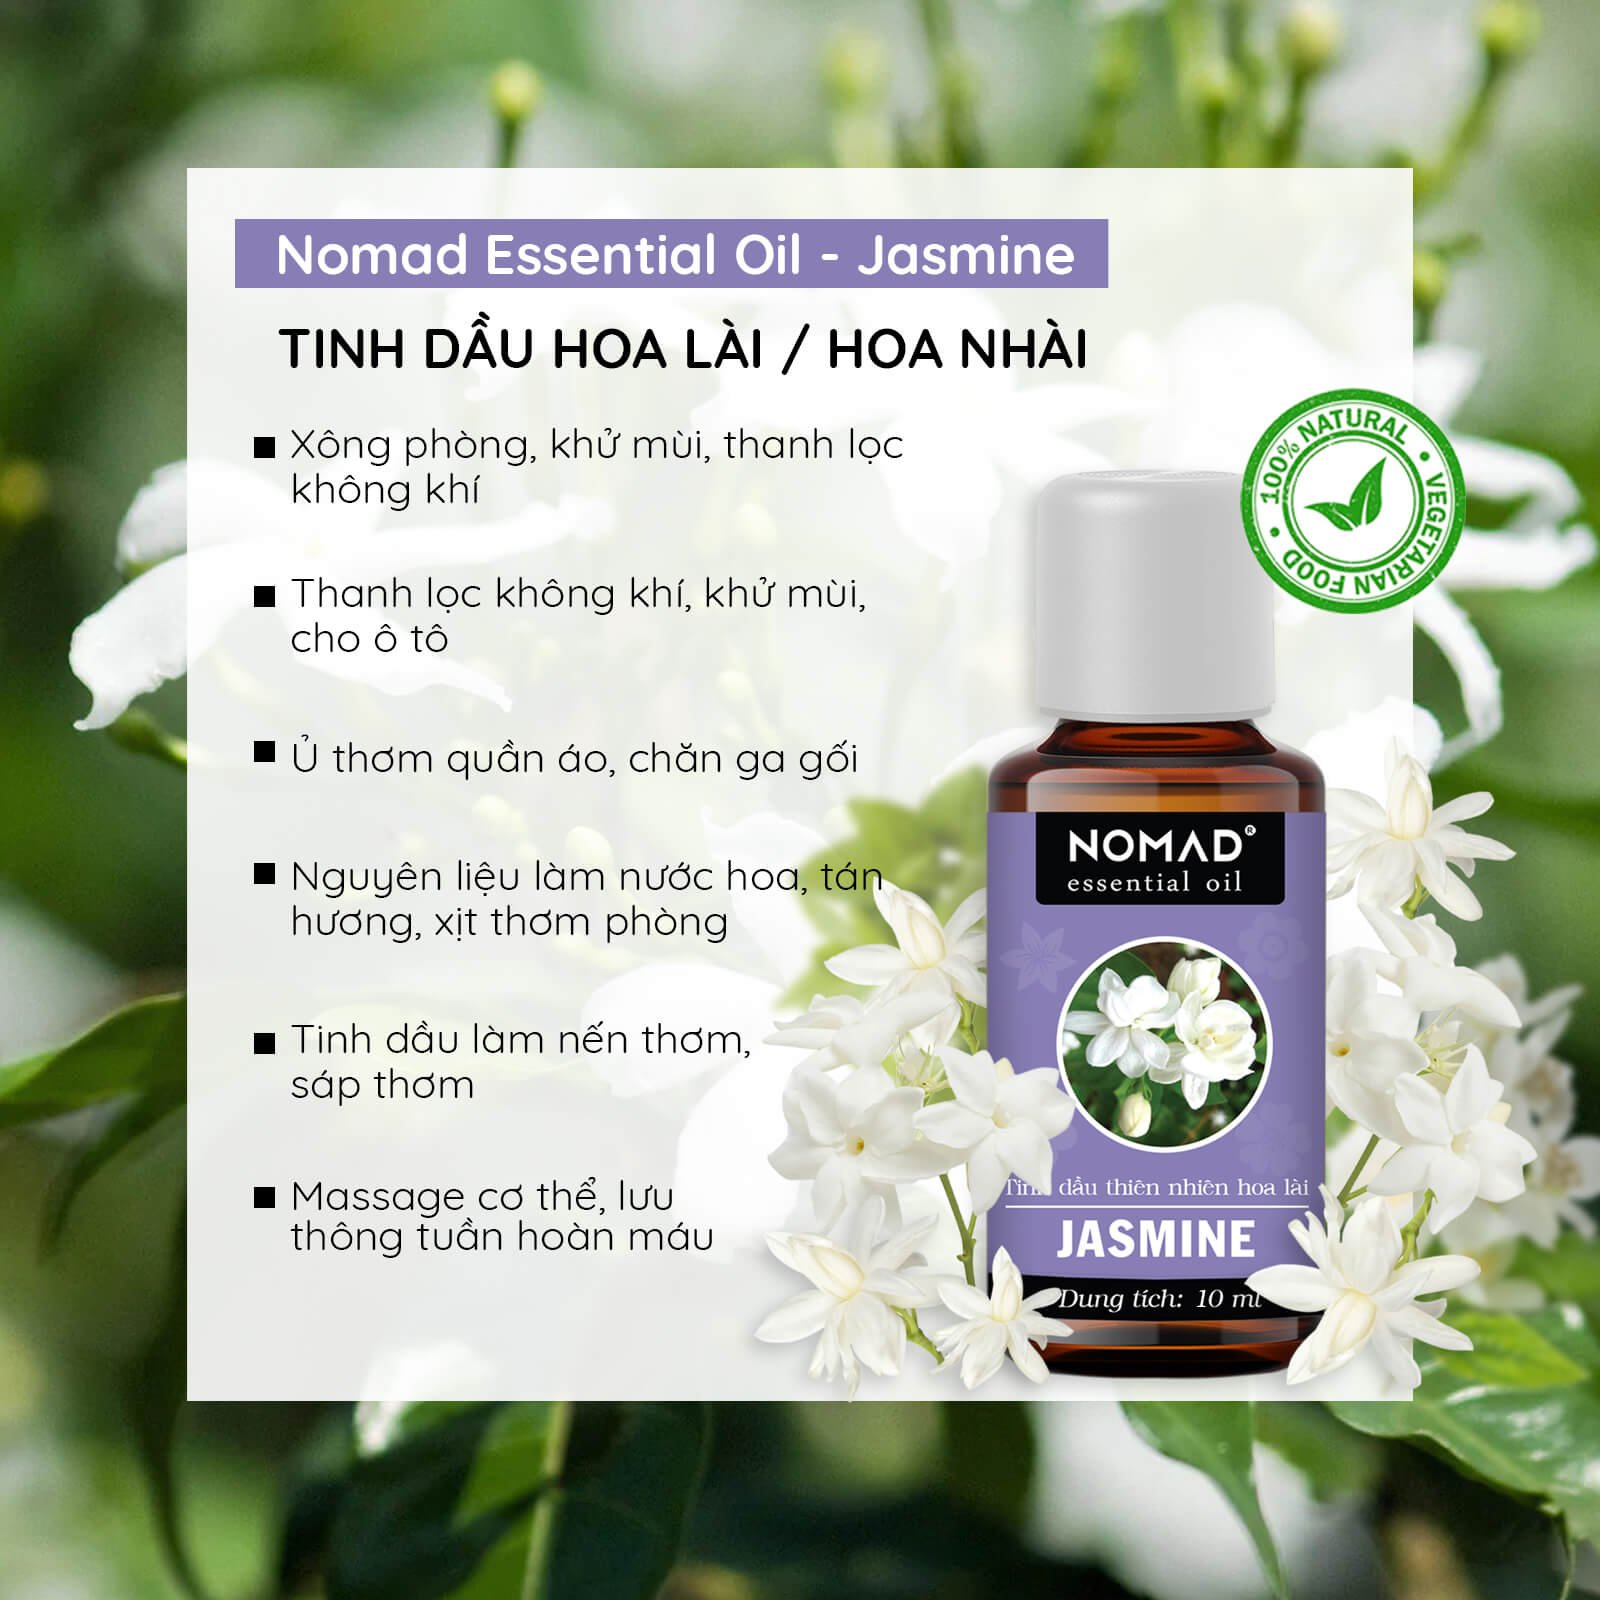 Tinh Dầu Thiên Nhiên Hương Hoa Lài Nomad Essential Oils Jasmine